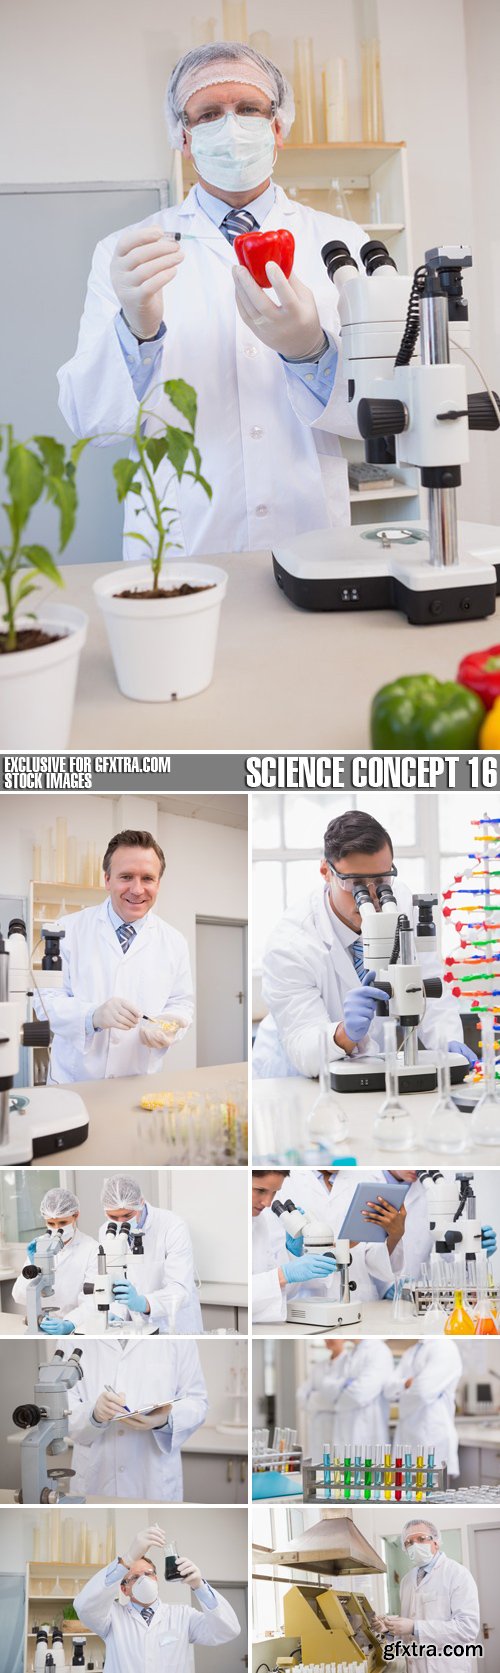 Stock Photos - Science Concept 16